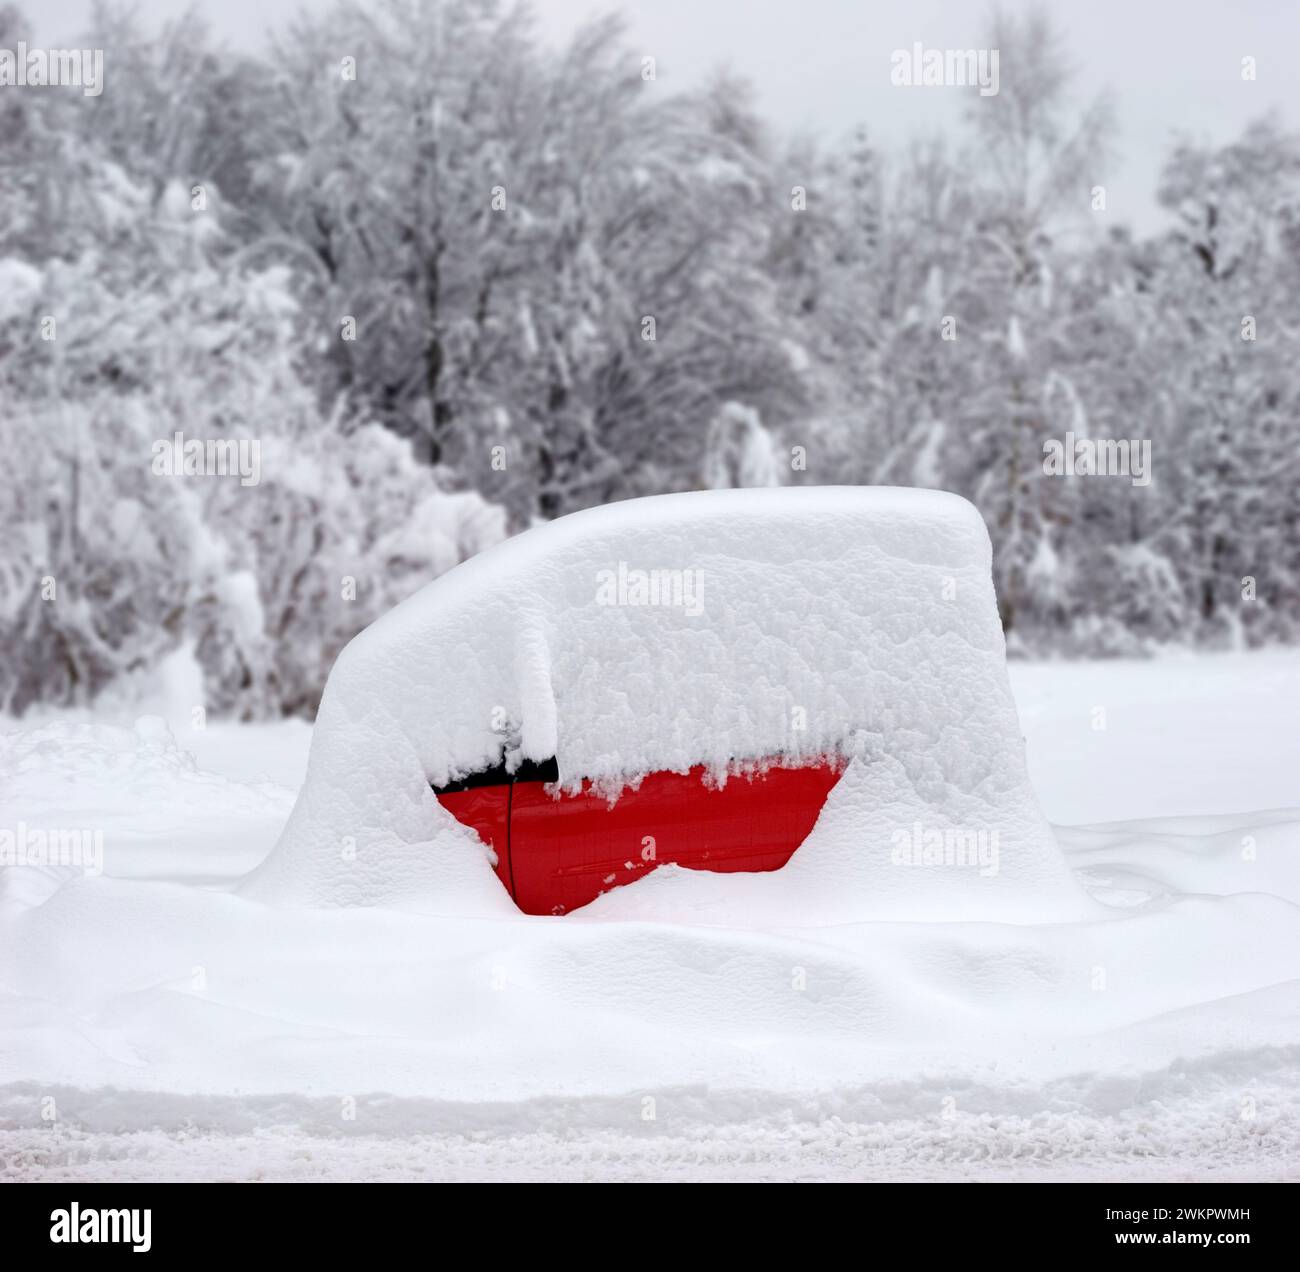 Ein roter Smart, ein winziges Auto, geparkt und komplett mit Schnee bedeckt, Winter, München, Bayern, Deutschland Stockfoto